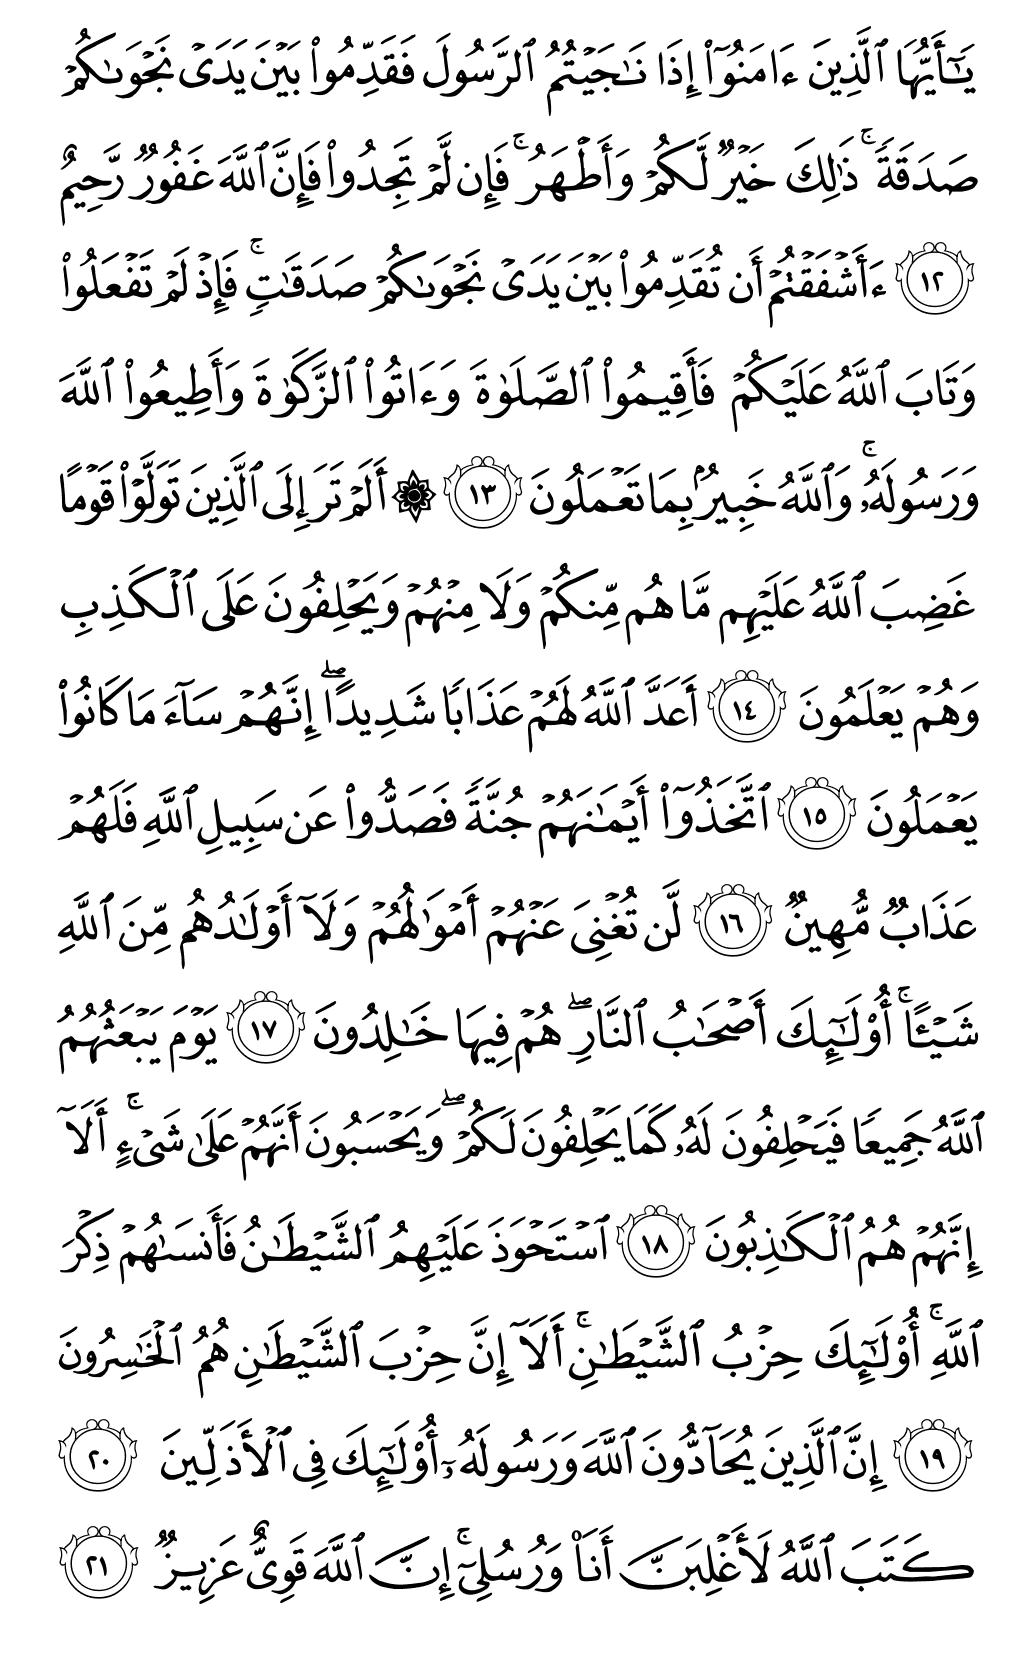 الصفحة رقم 544 من القرآن الكريم